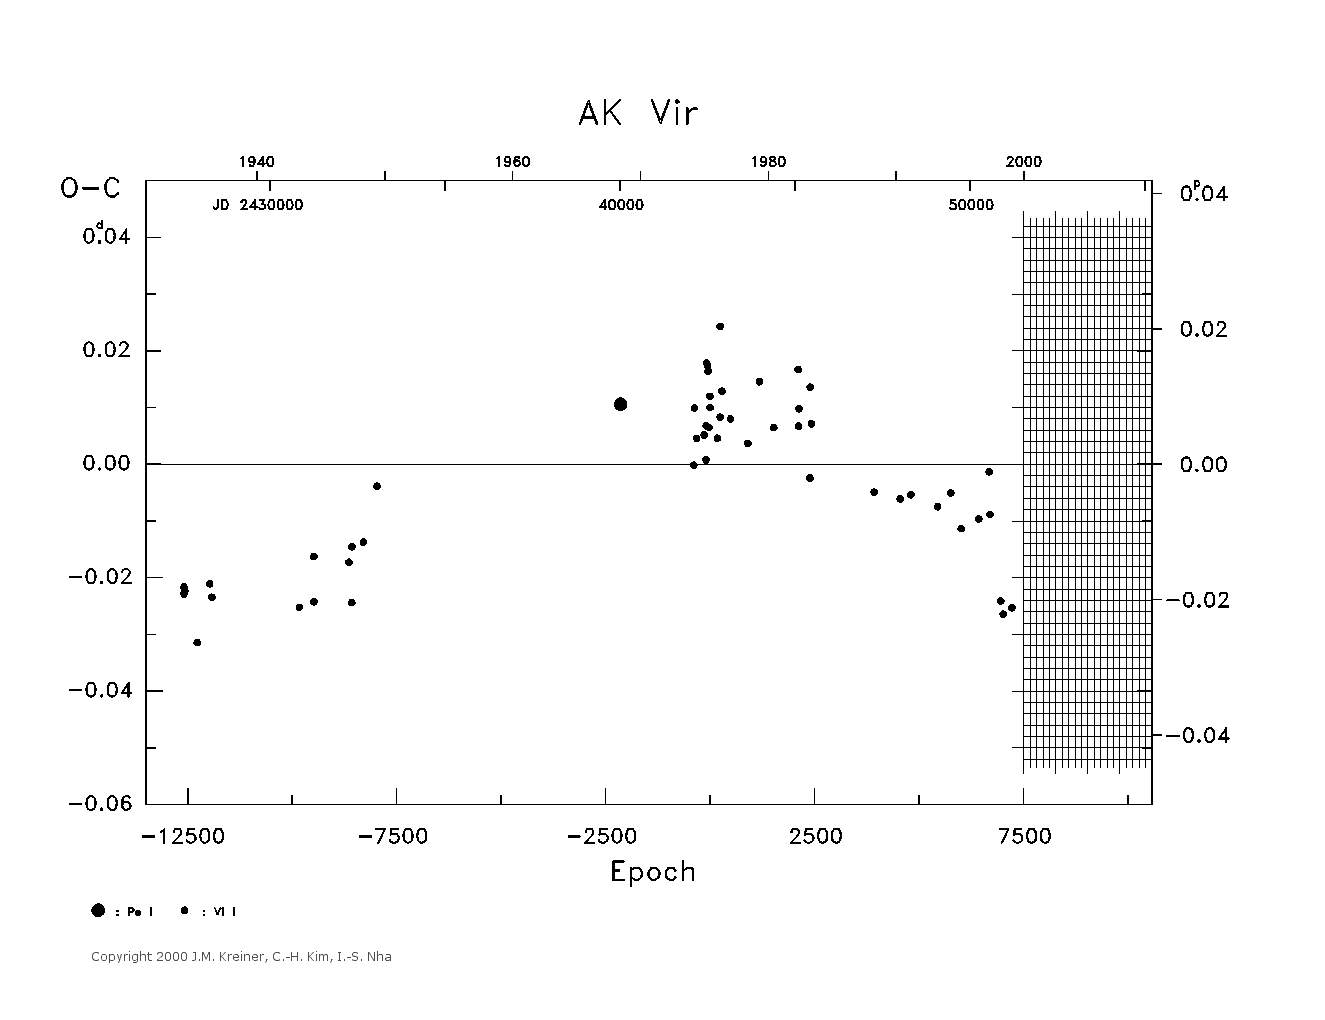 [IMAGE: large AK VIR O-C diagram]